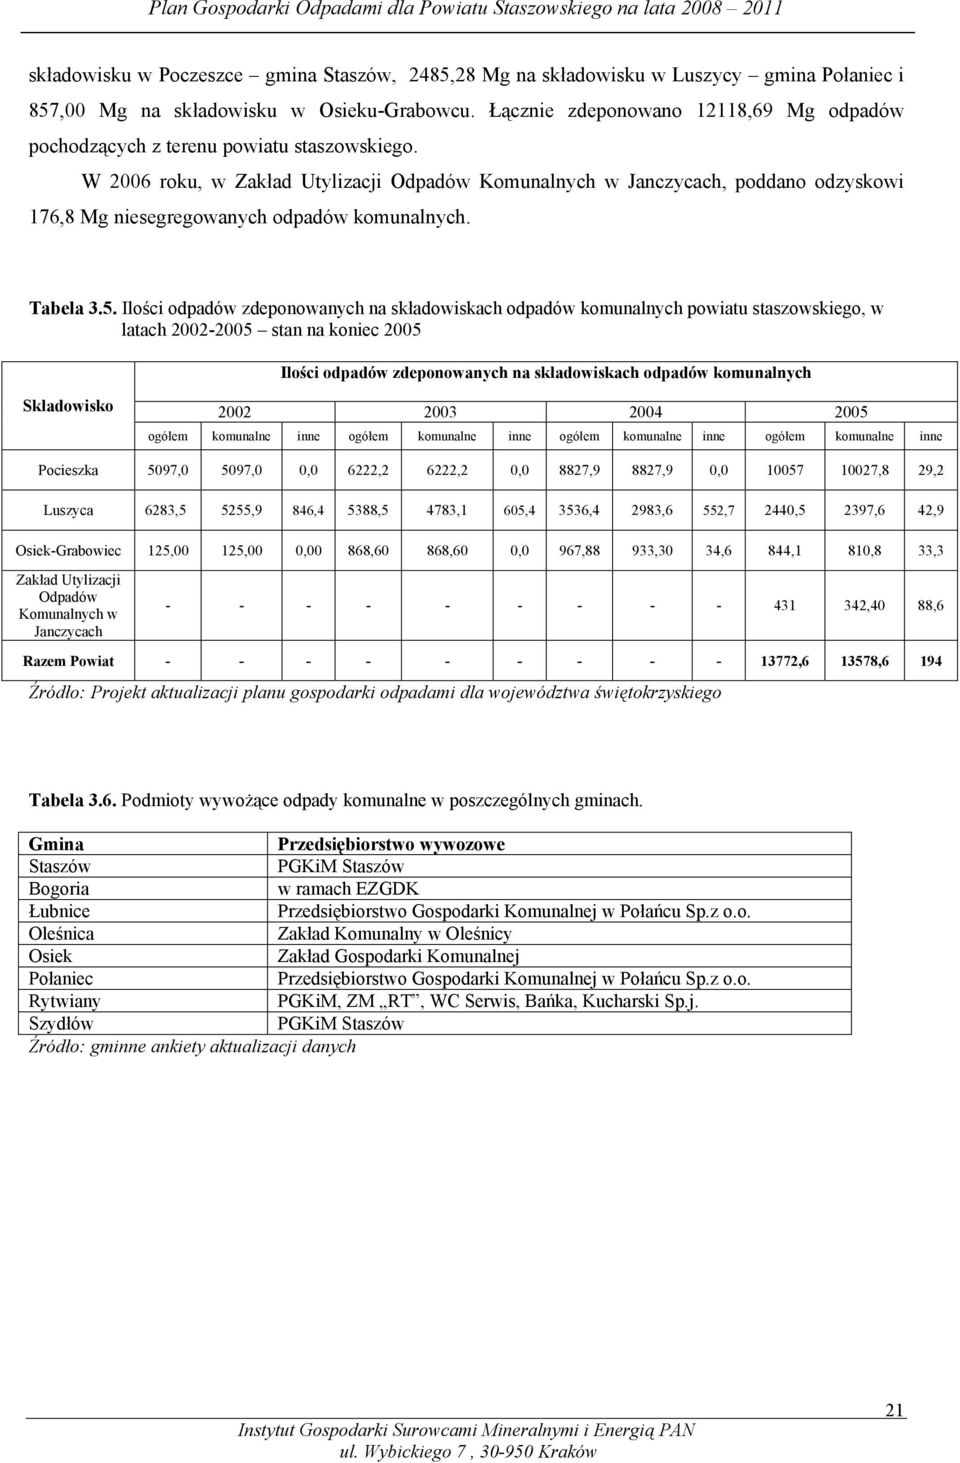 W 2006 roku, w Zakład Utylizacji Odpadów Komunalnych w Janczycach, poddano odzyskowi 176,8 Mg niesegregowanych odpadów komunalnych. Tabela 3.5.